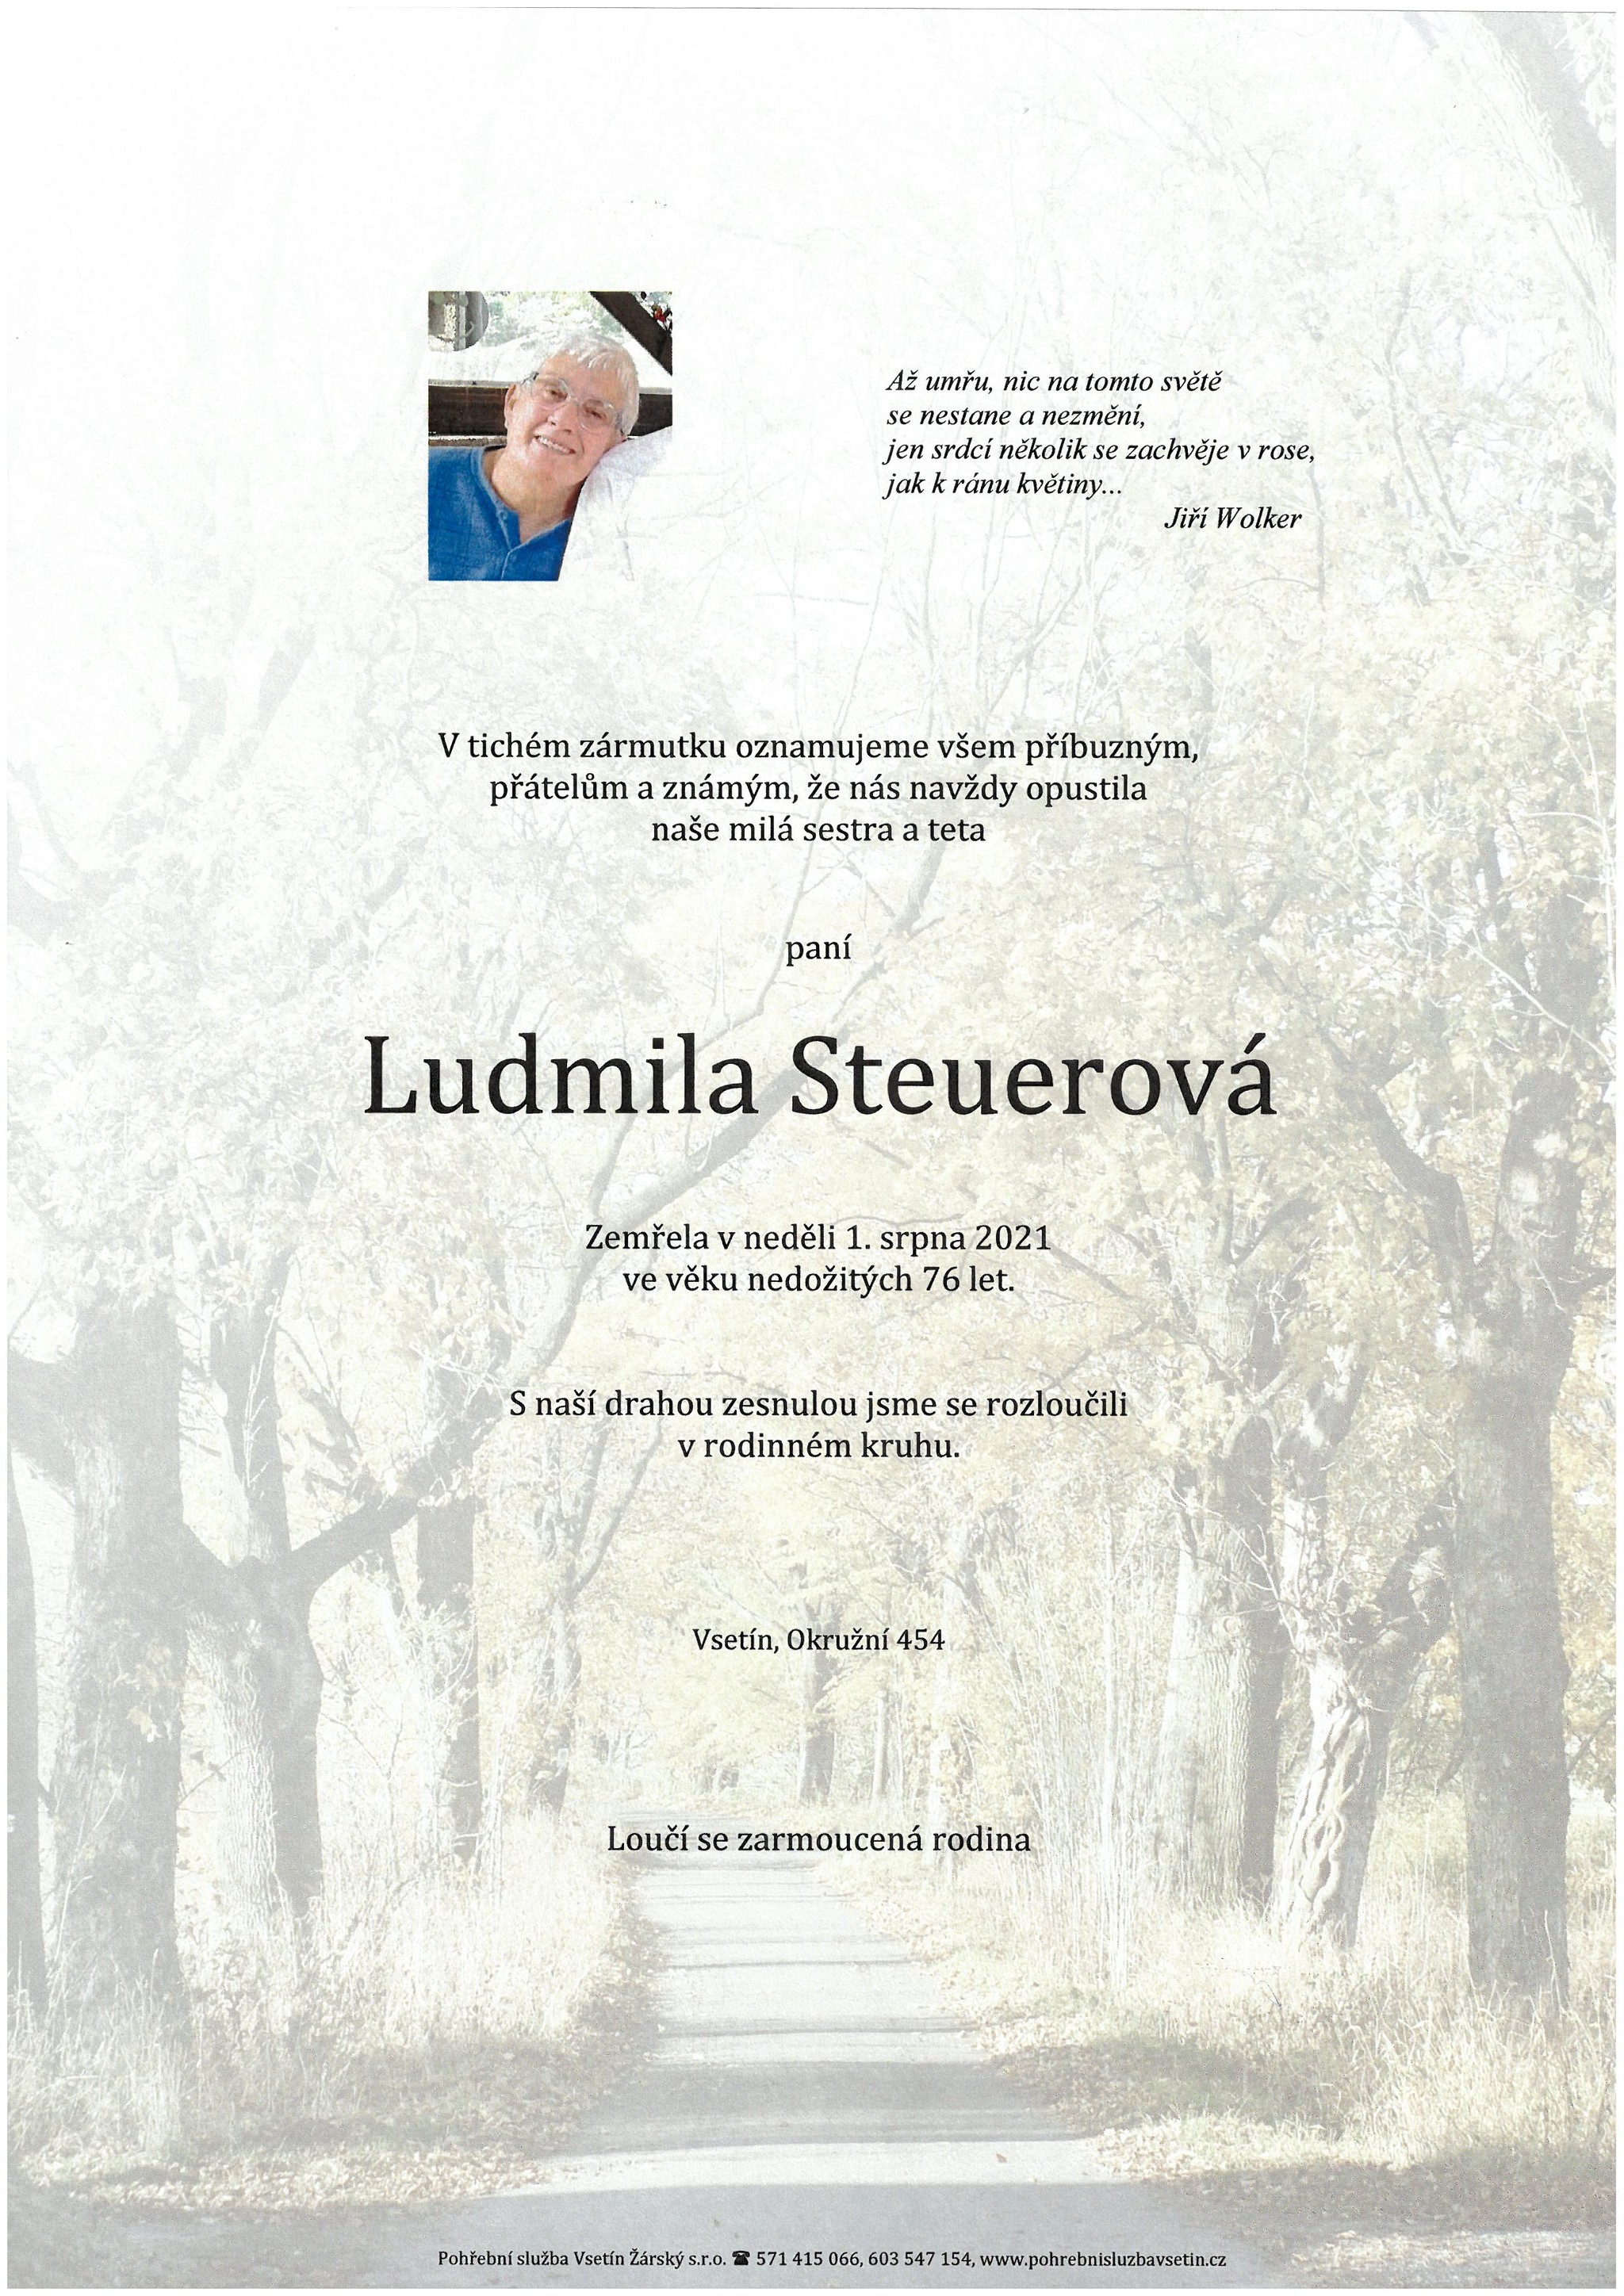 Ludmila Steuerová